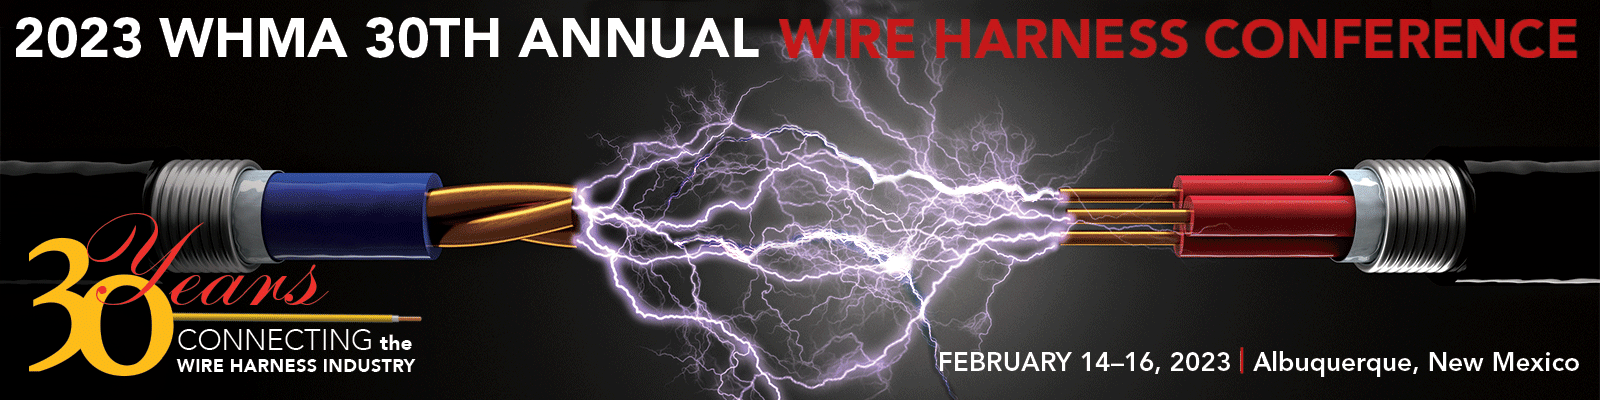 2023 WHMA 30th Annual Wire Harness Conference